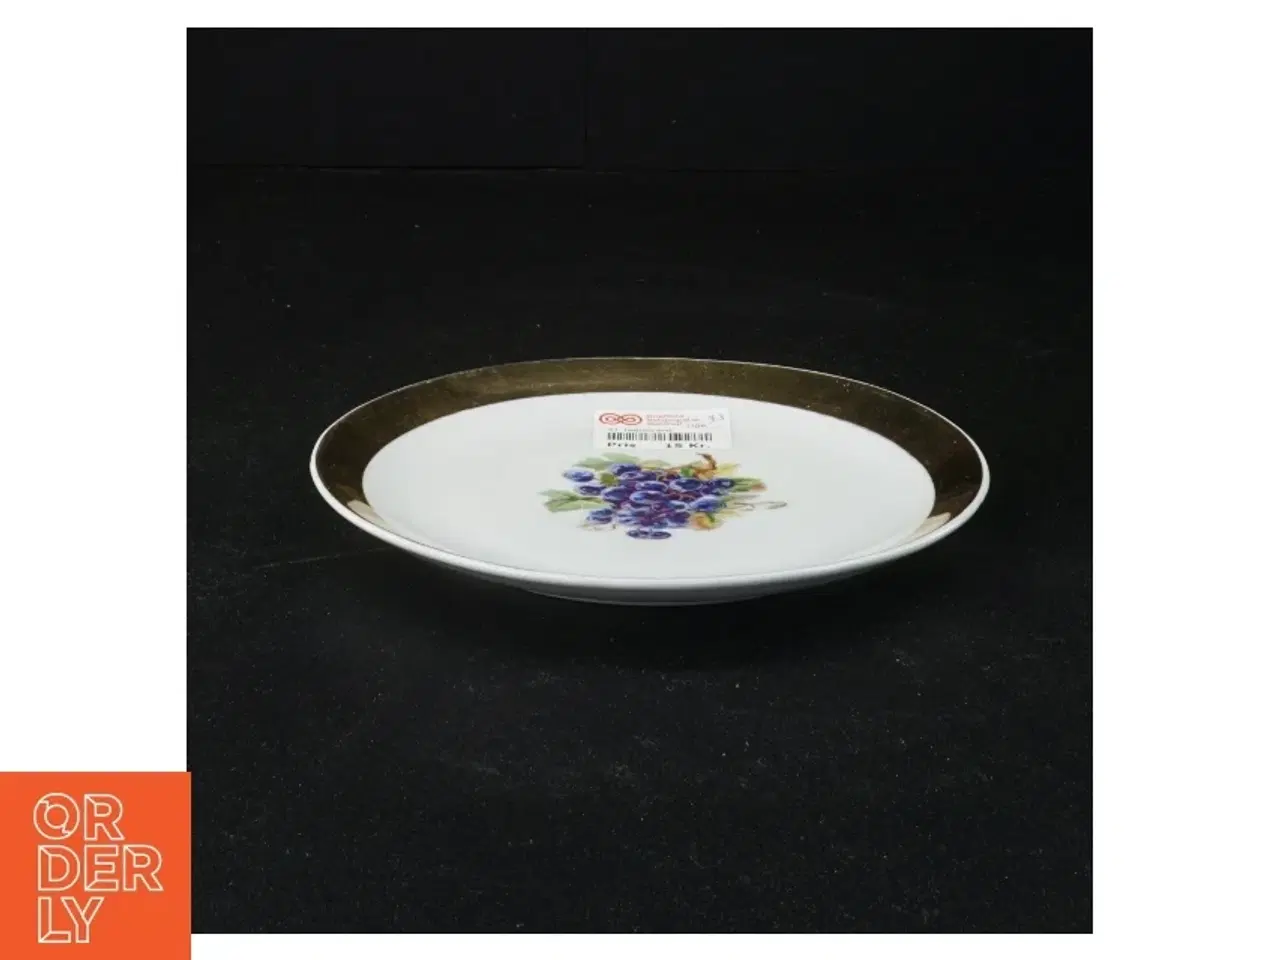 Billede 2 - Dekorativ porcelænstallerken med blomstermotiv (str. 17 x 17 cm)